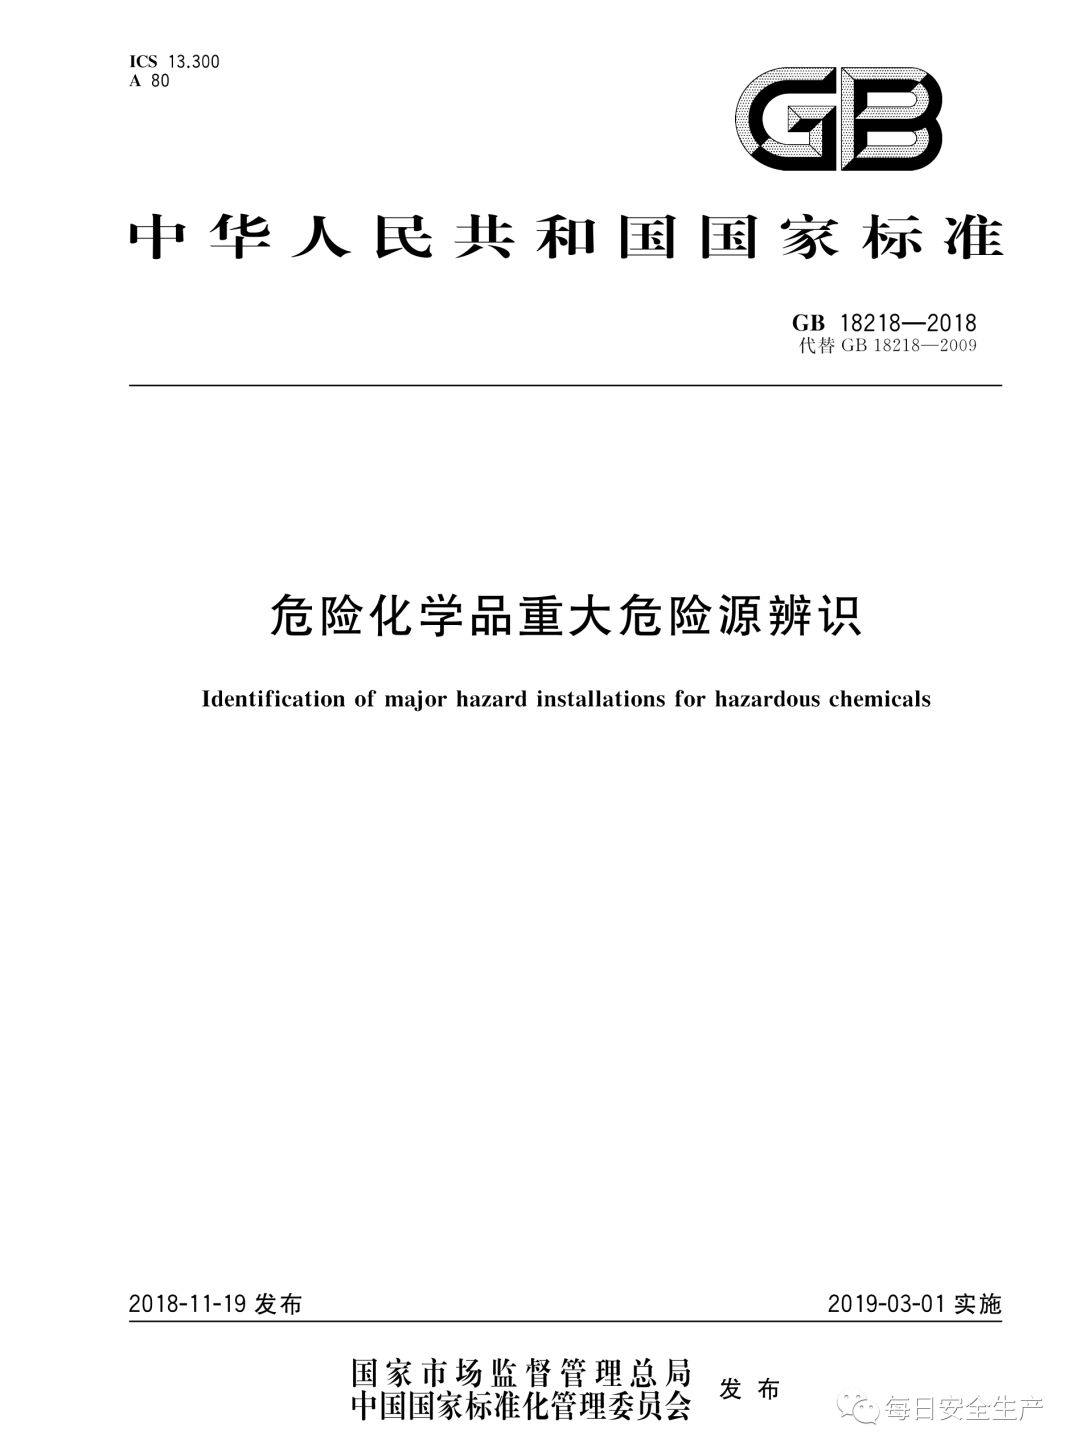 中国安科院关于危险化学品重大危险源罐区单元划分的咨询请求的复函(图4)